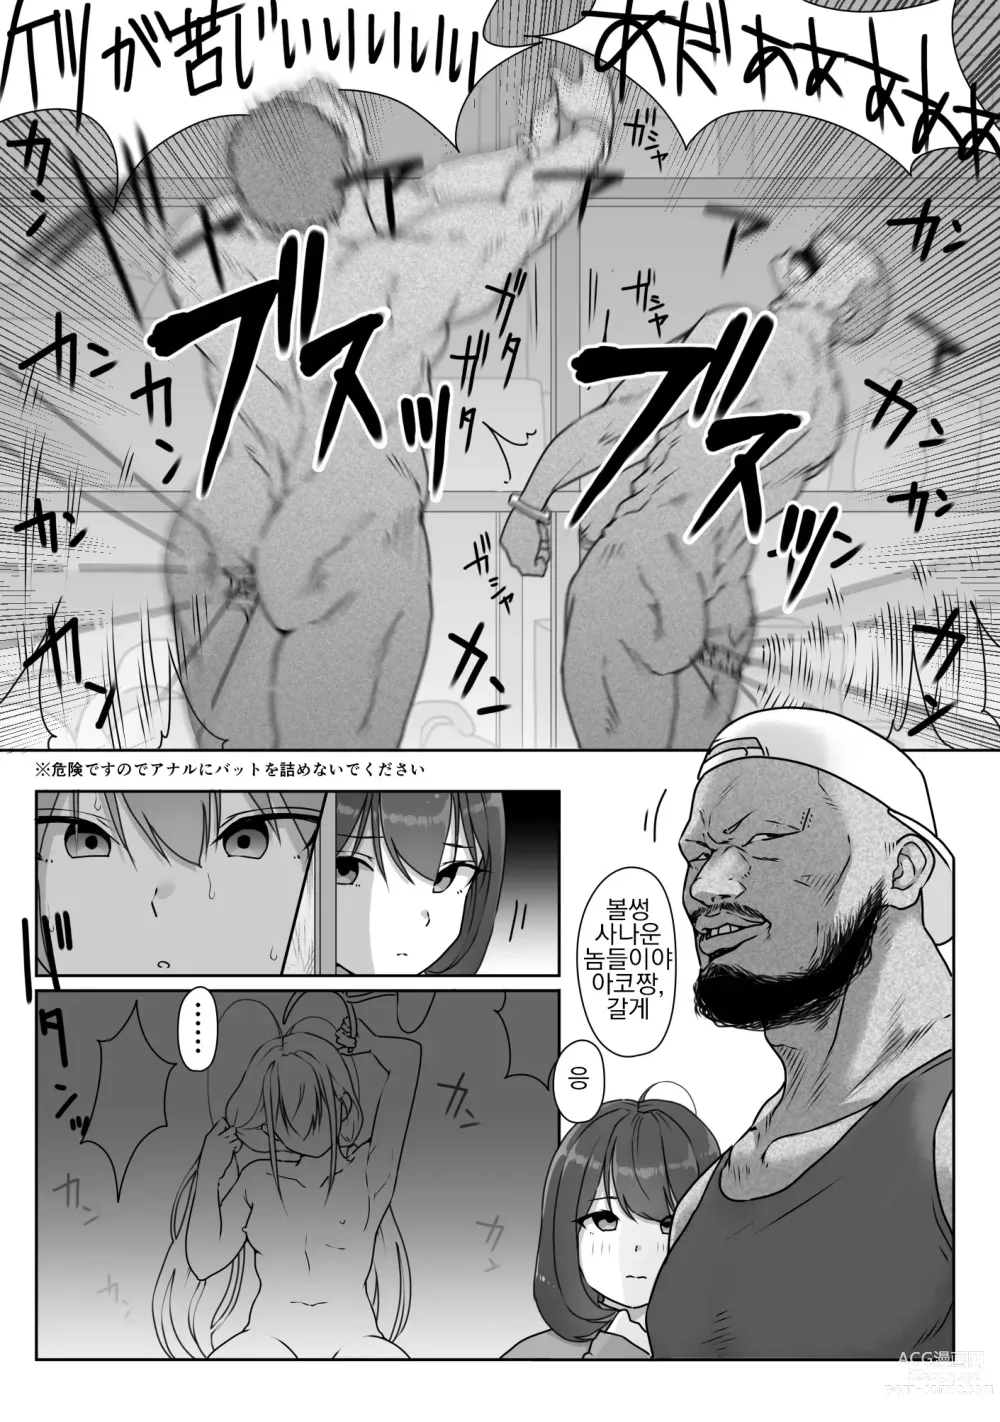 Page 101 of doujinshi 테니스부는 야구부의 손에 떨어졌습니다